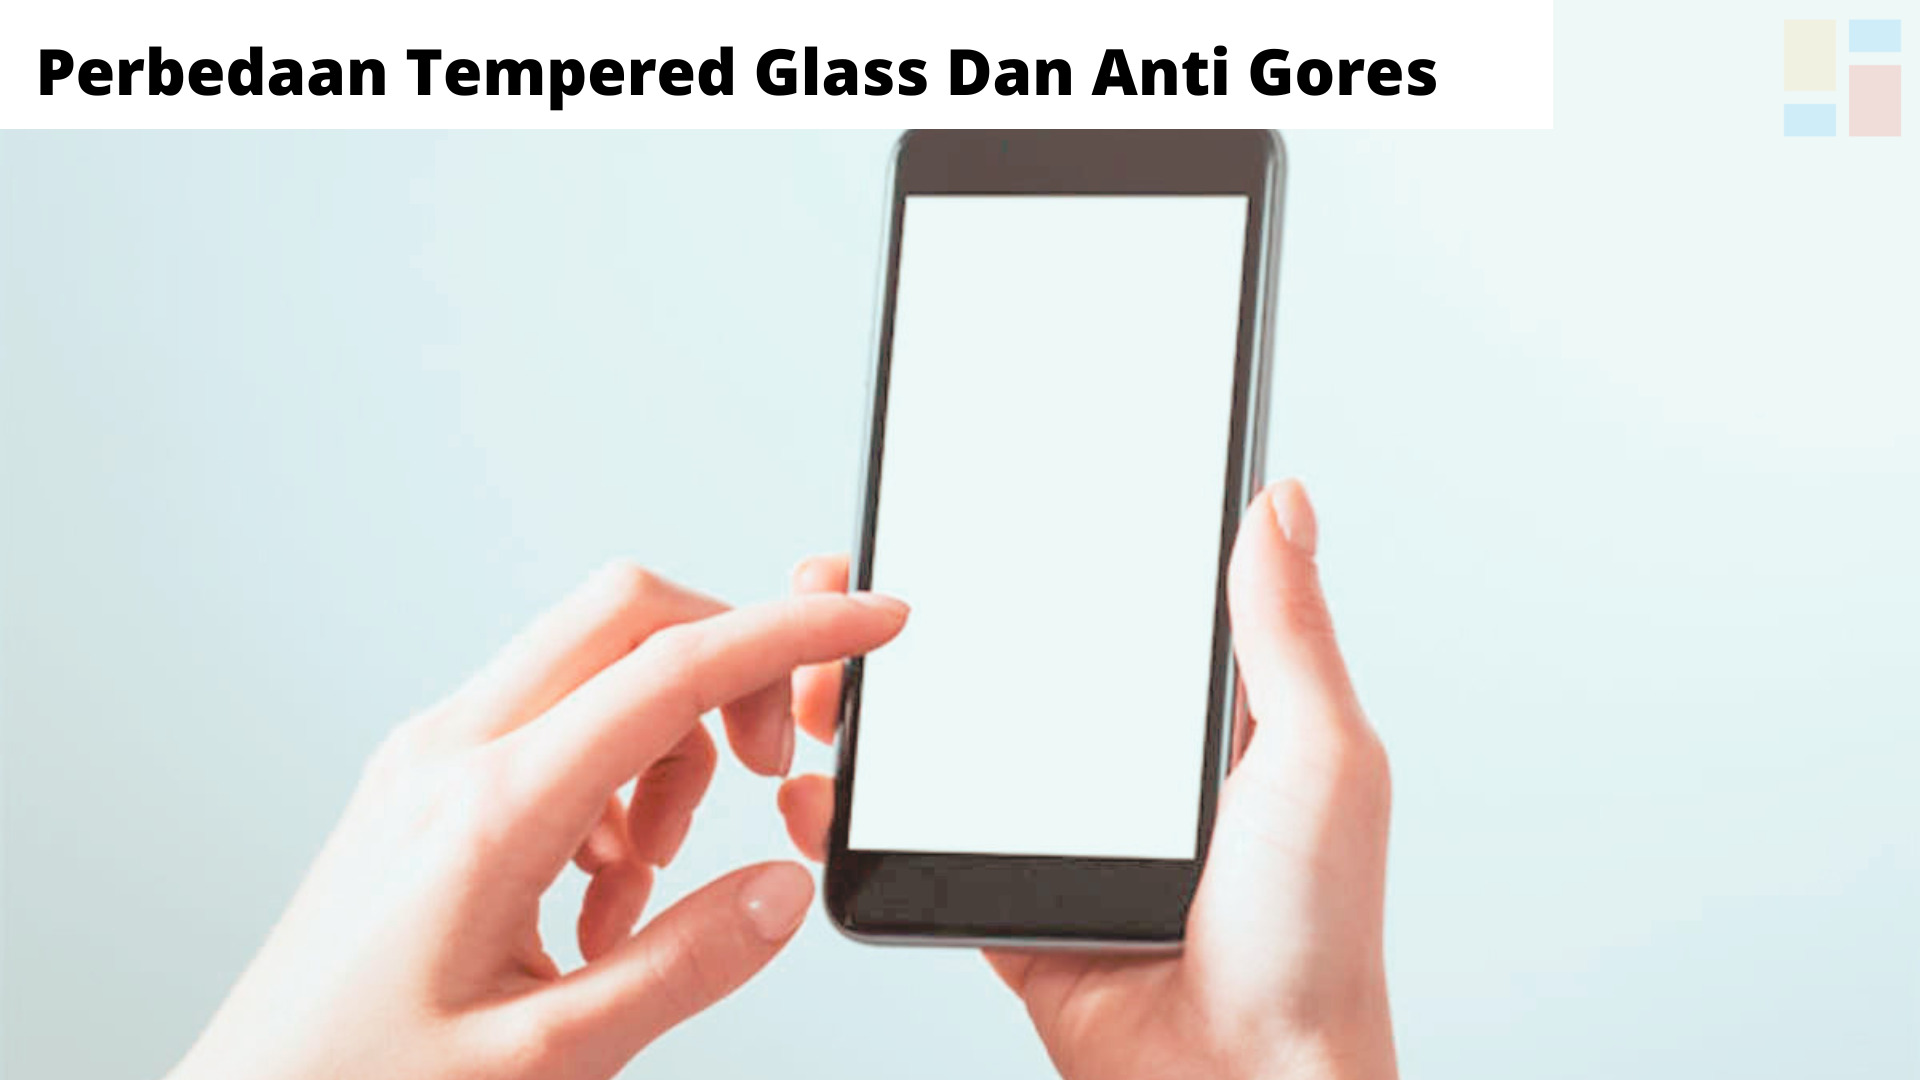 Perbedaan Tempered Glass Dan Anti Gores